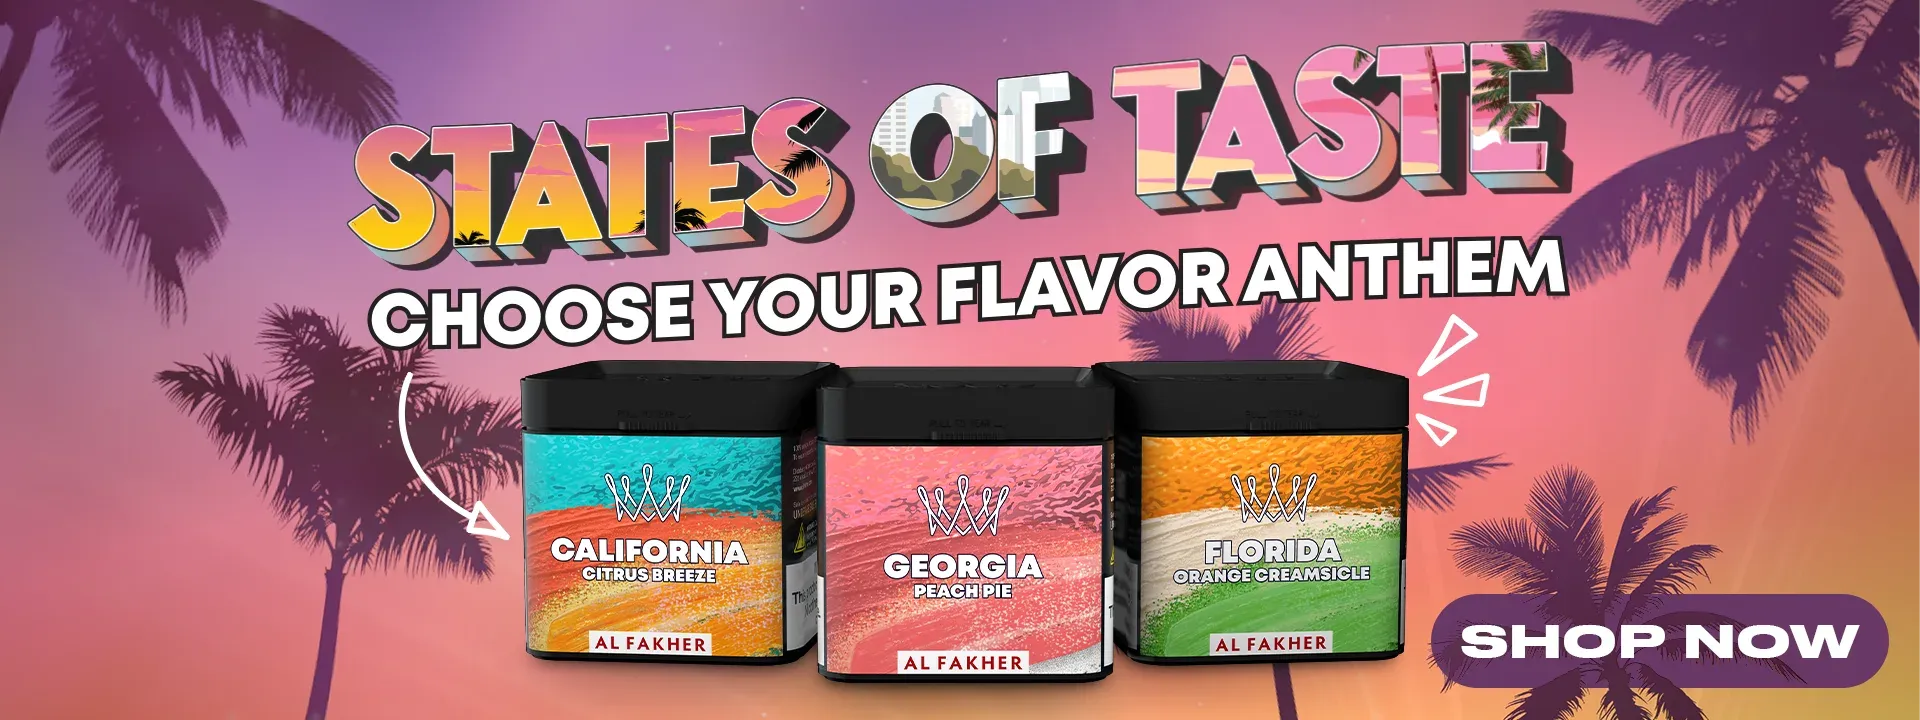 Al Fakher States of Taste Flavors